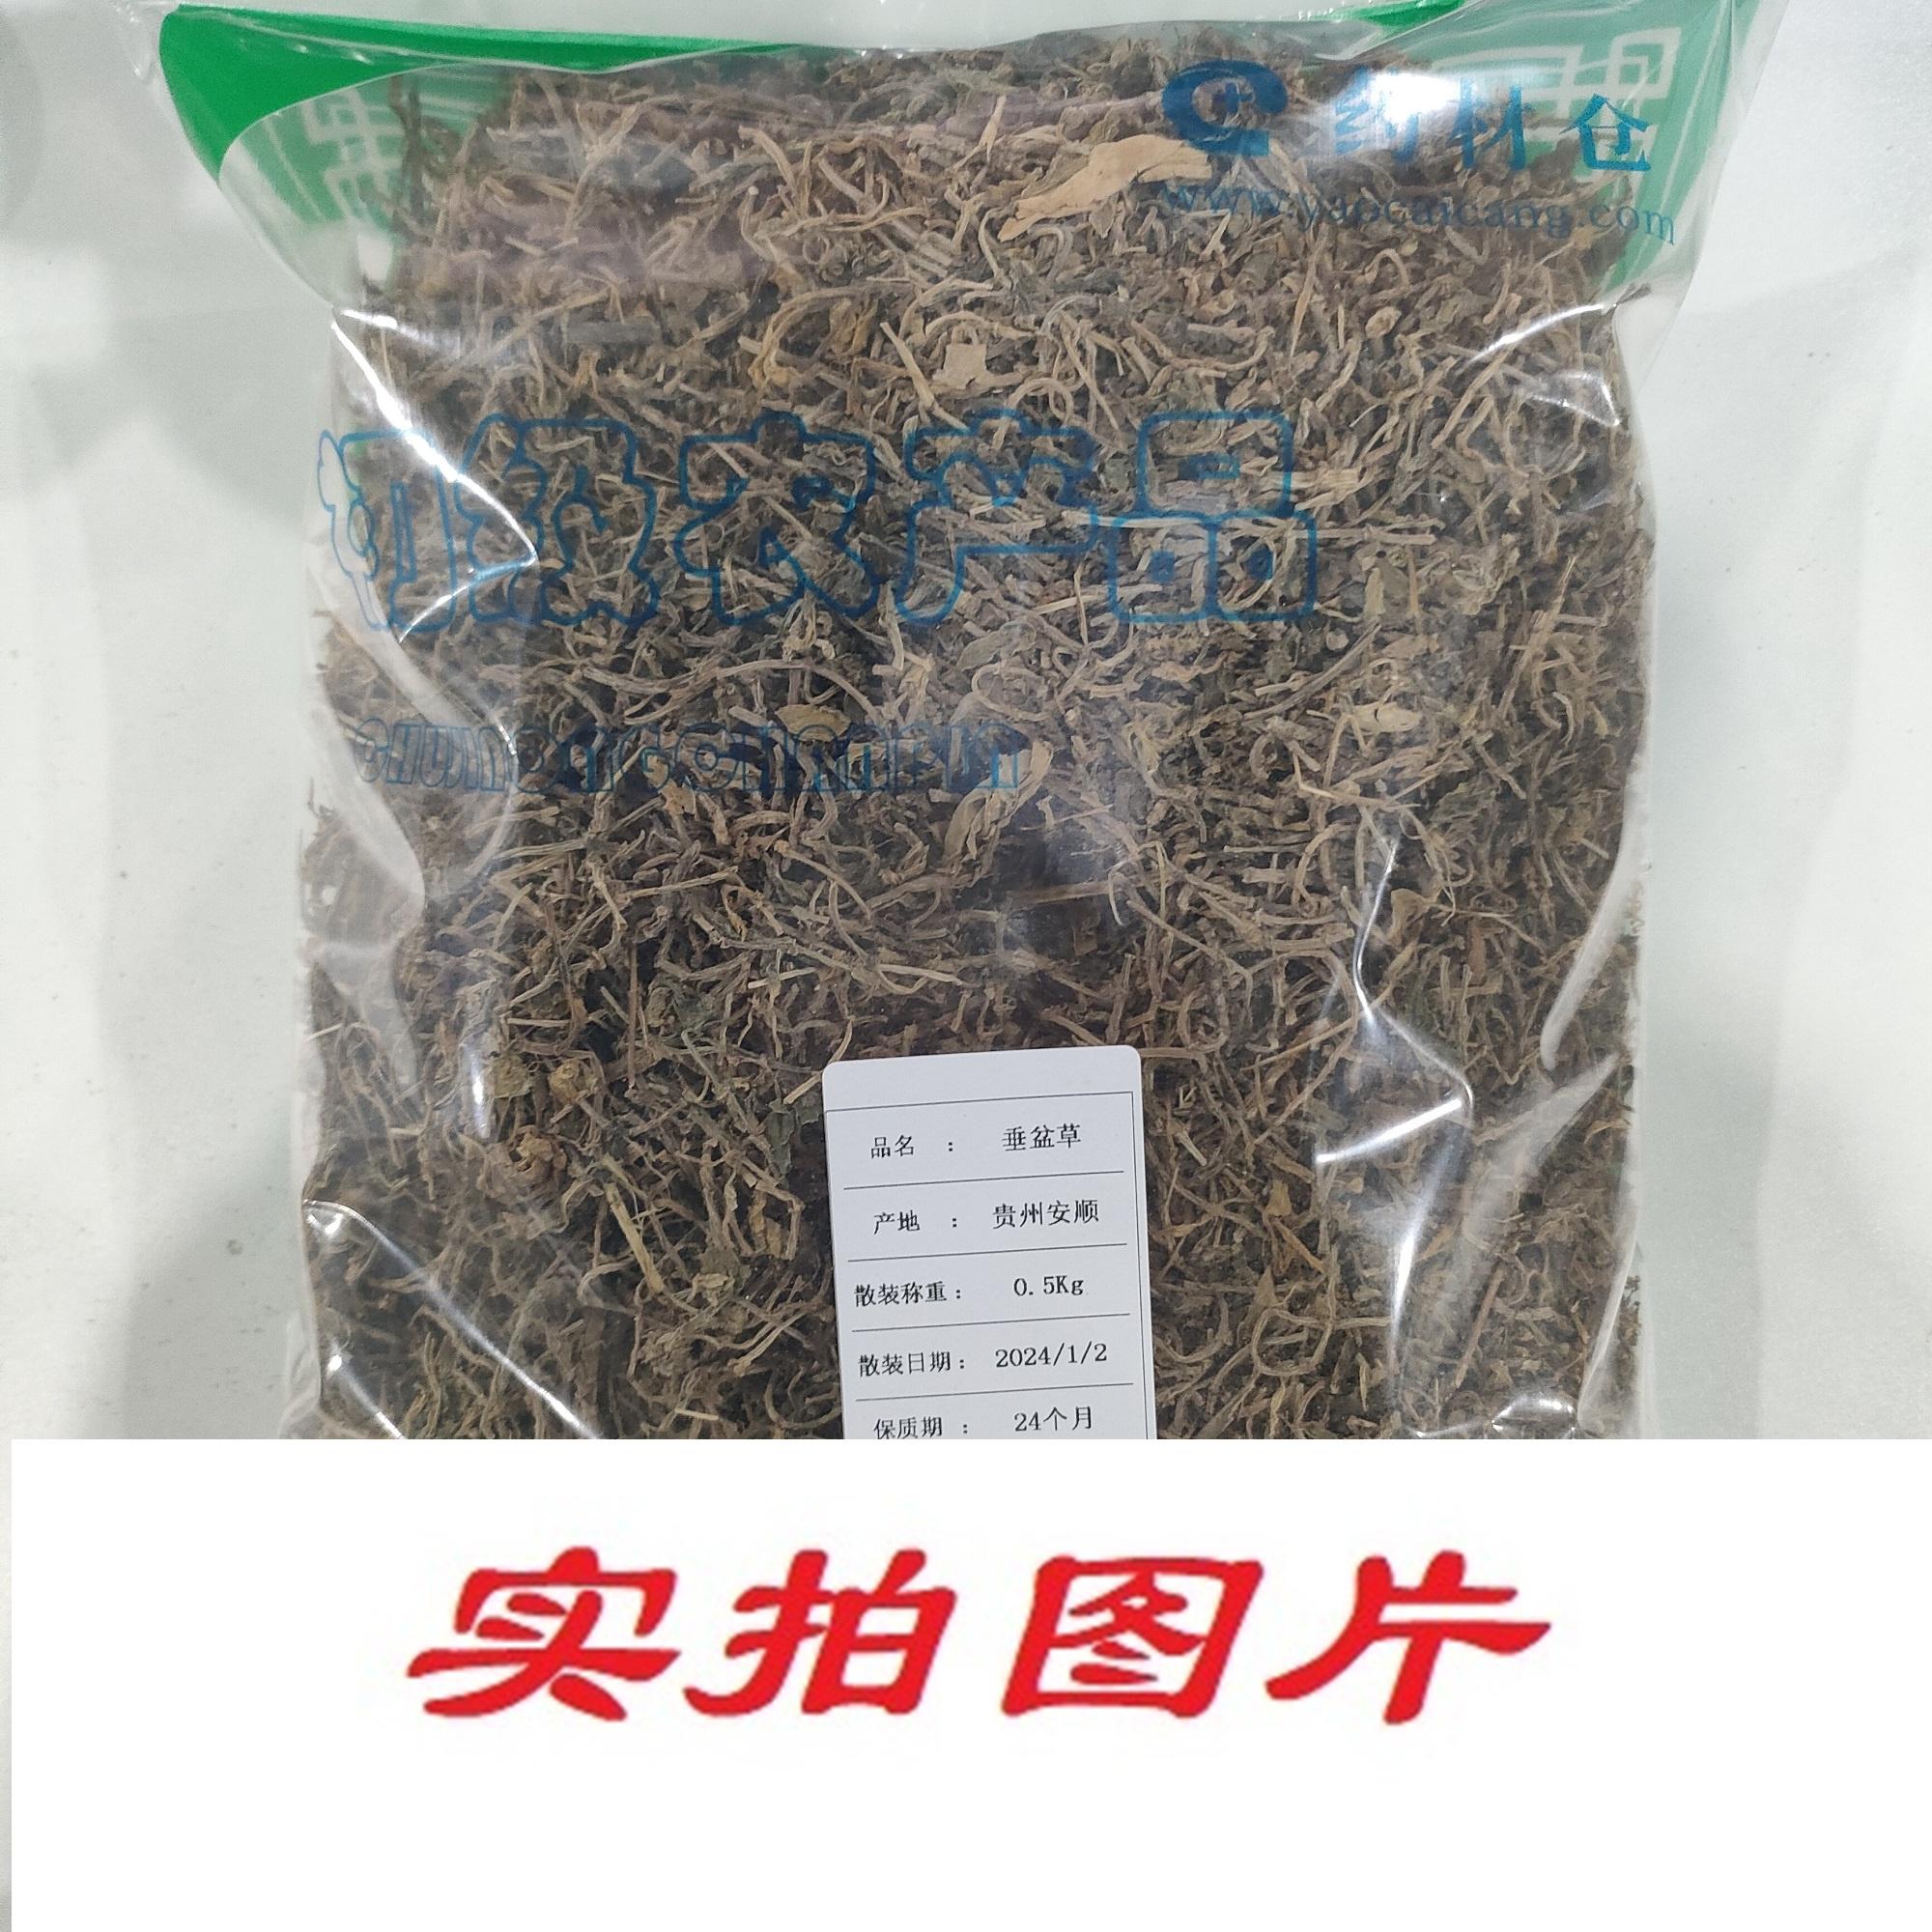 【】垂盆草0.5kg-农副产品